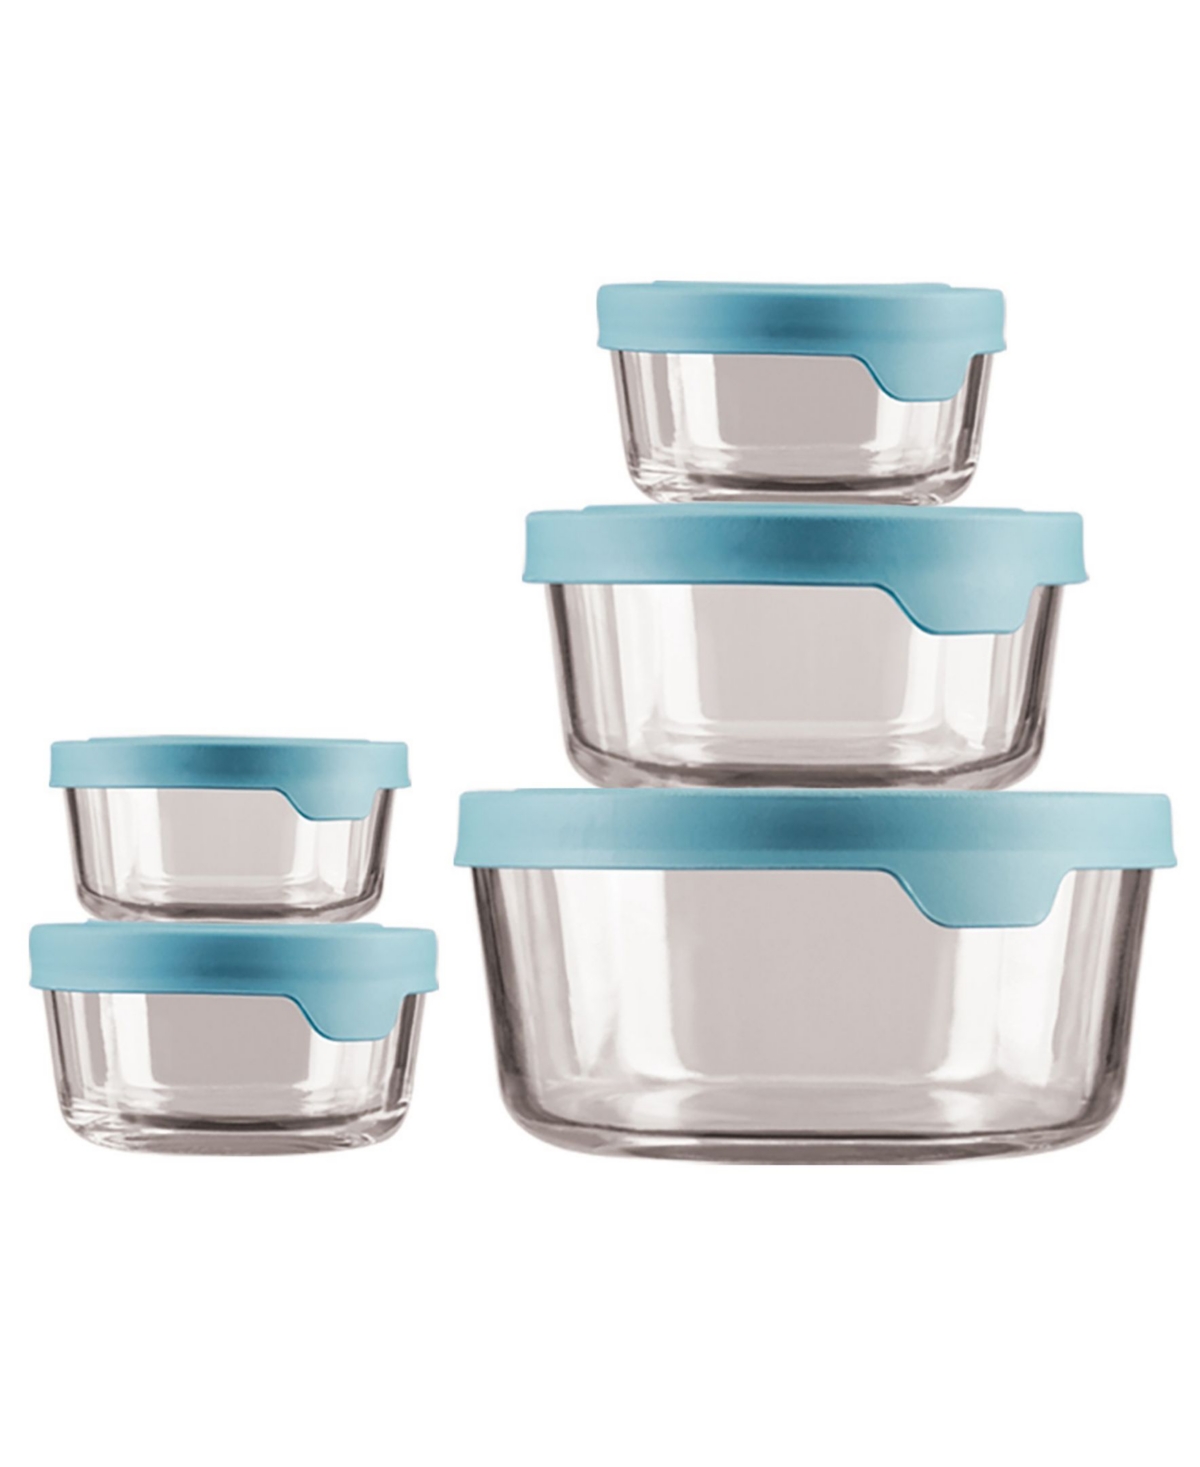 10-Pc. Round Glass Round Food Storage Set - Mineral Blue